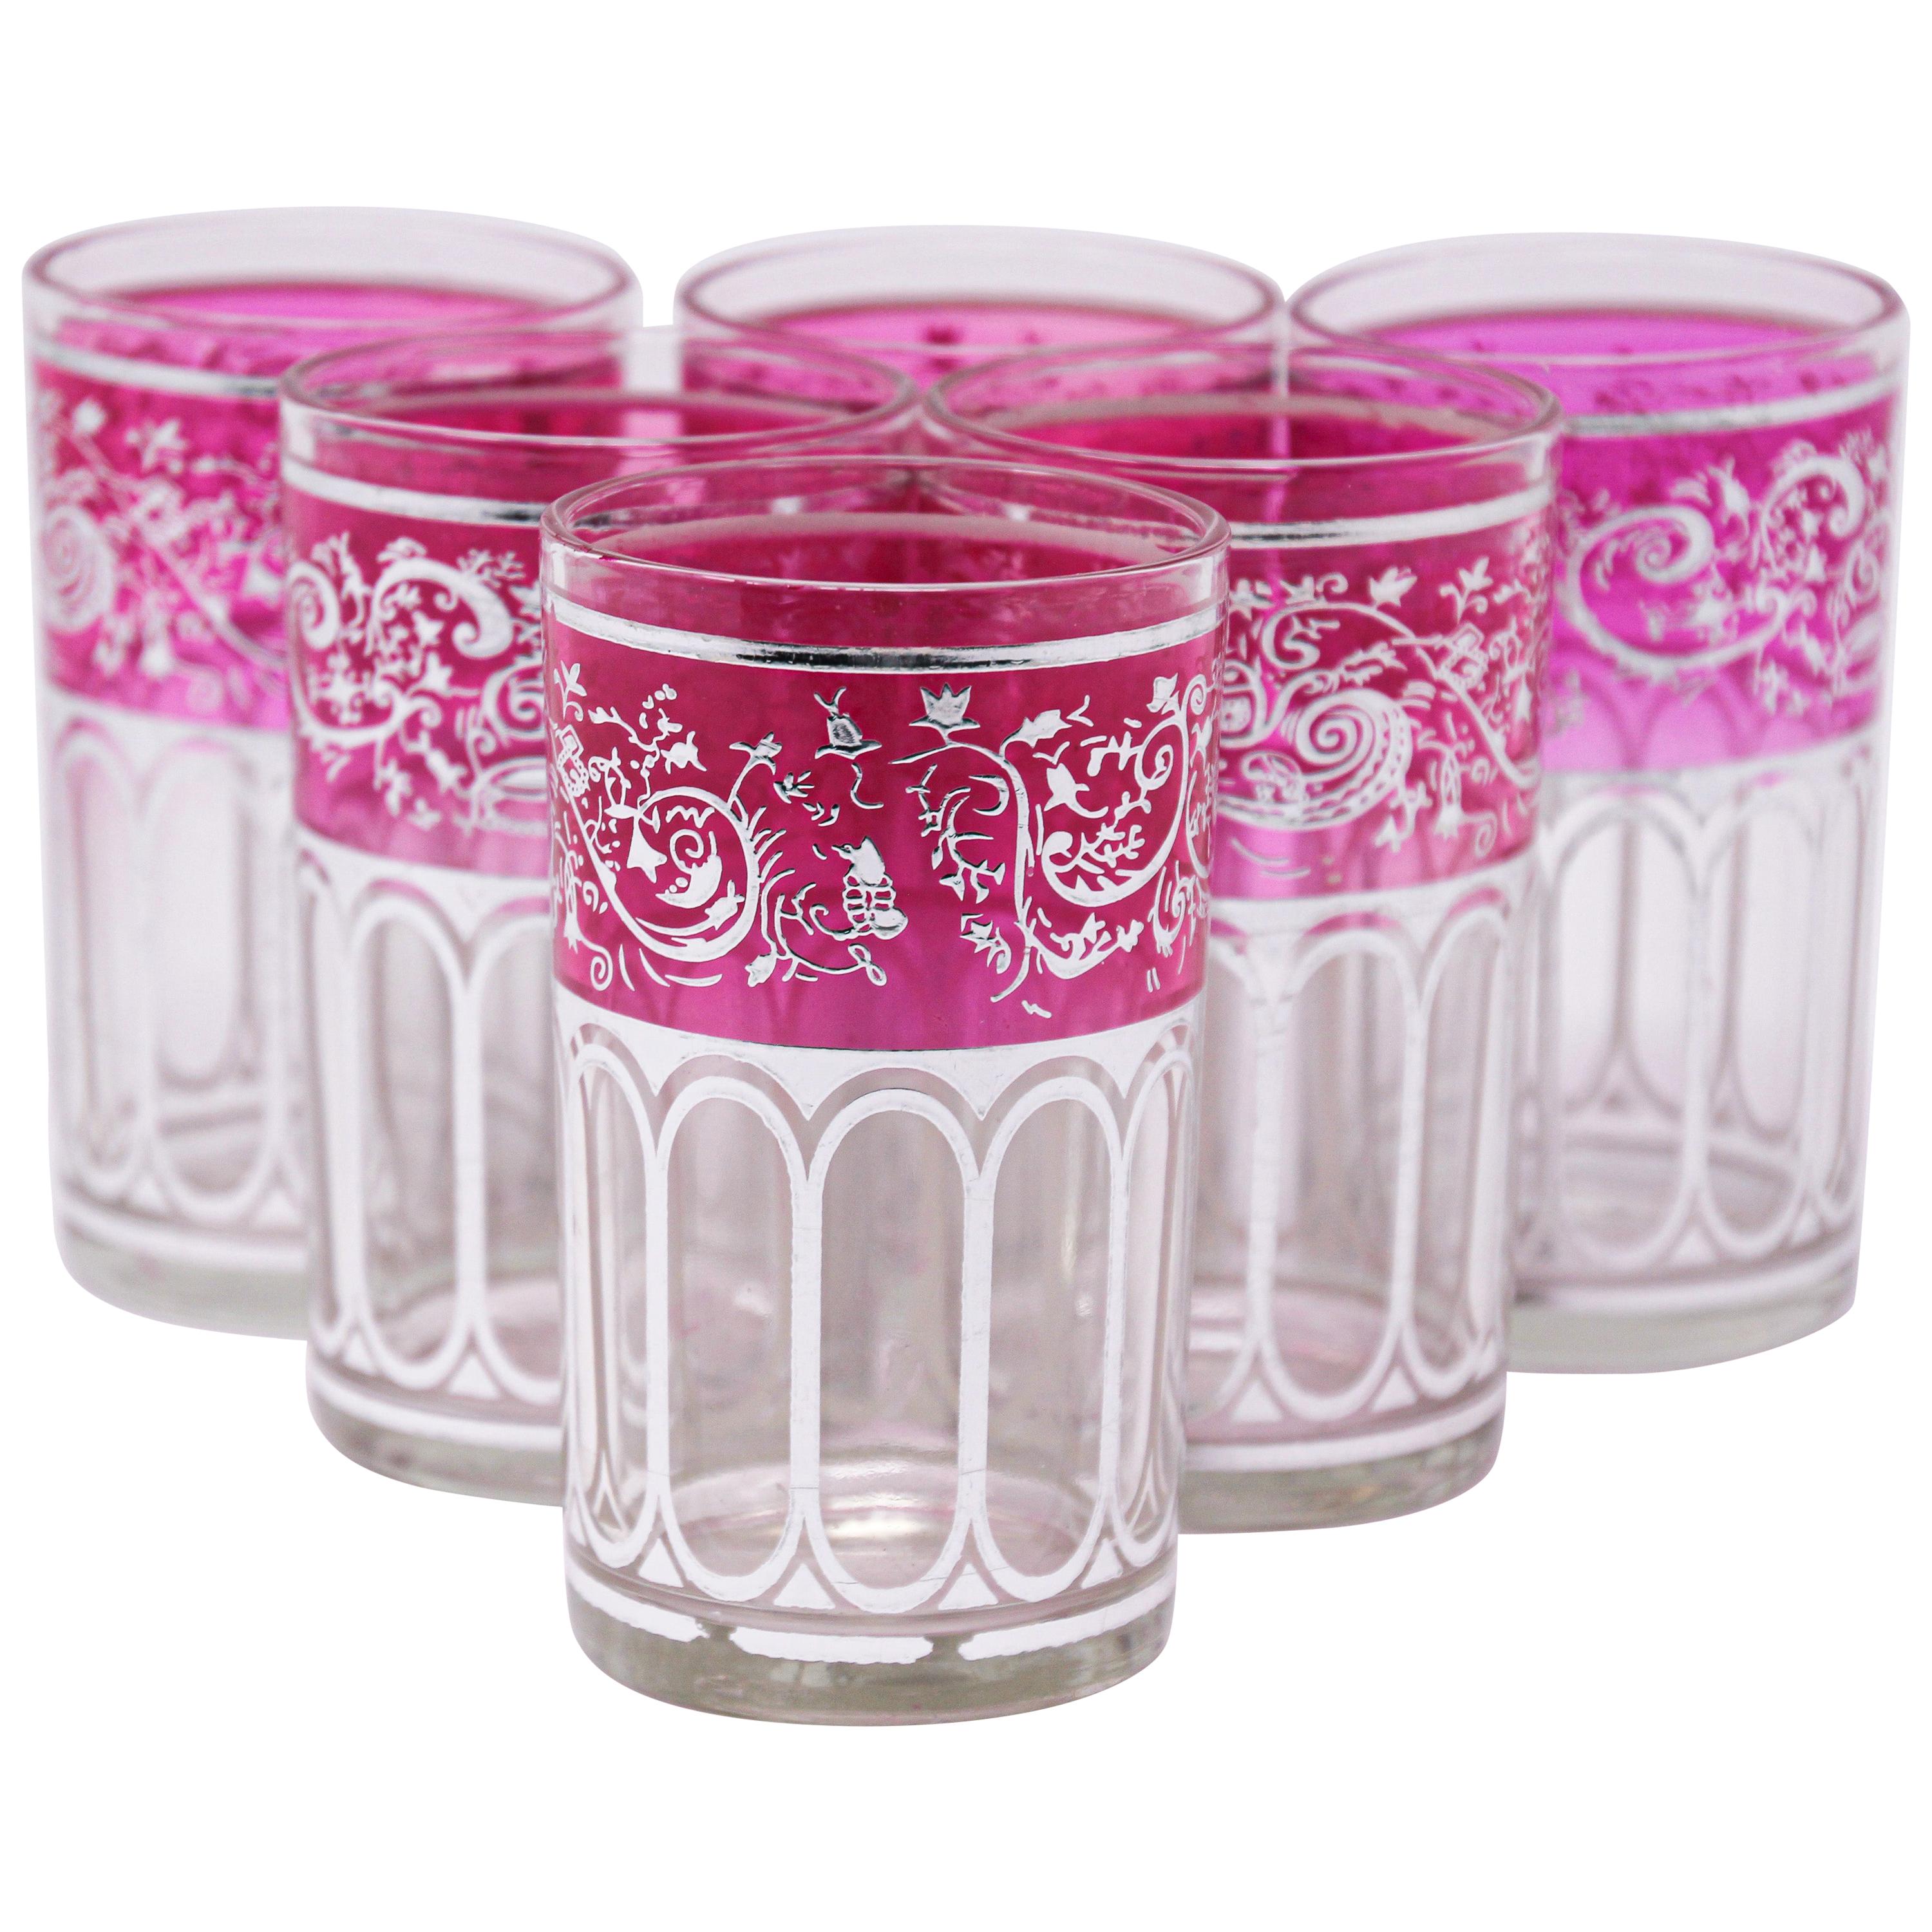 Ensemble de six verres roses avec motif mauresque en argent surélevé